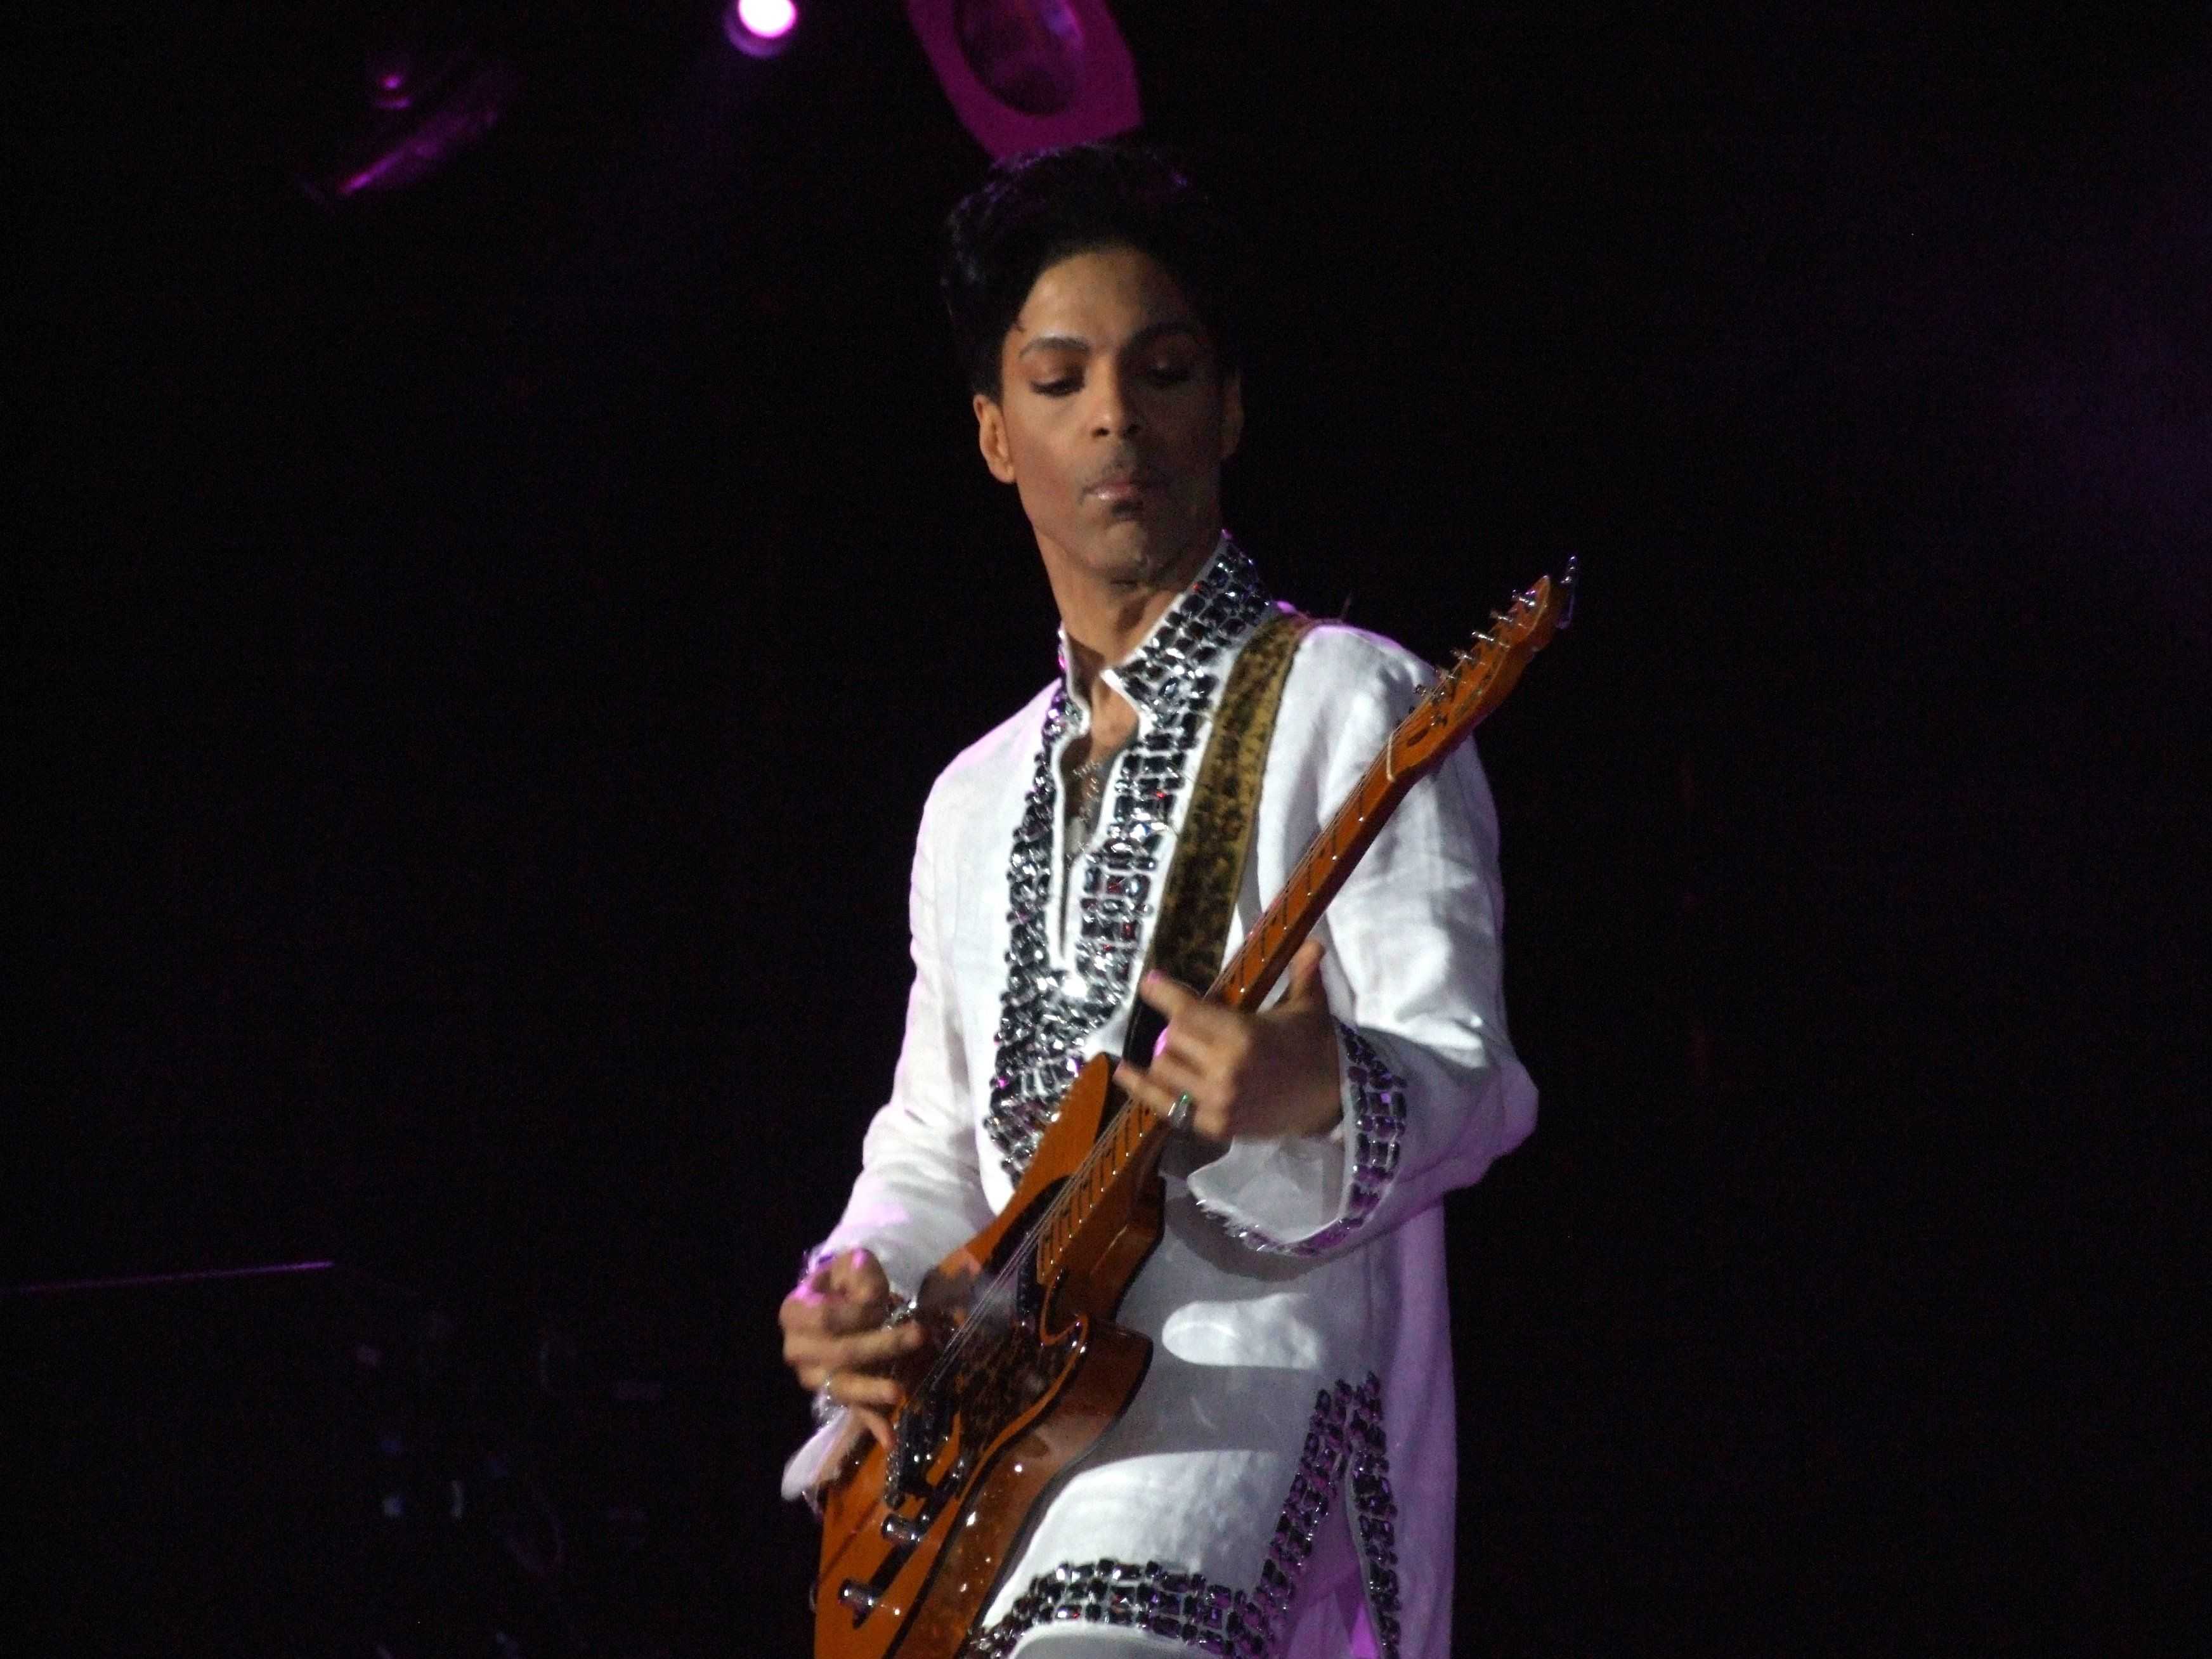 Muere el cantante Prince a los 57 años